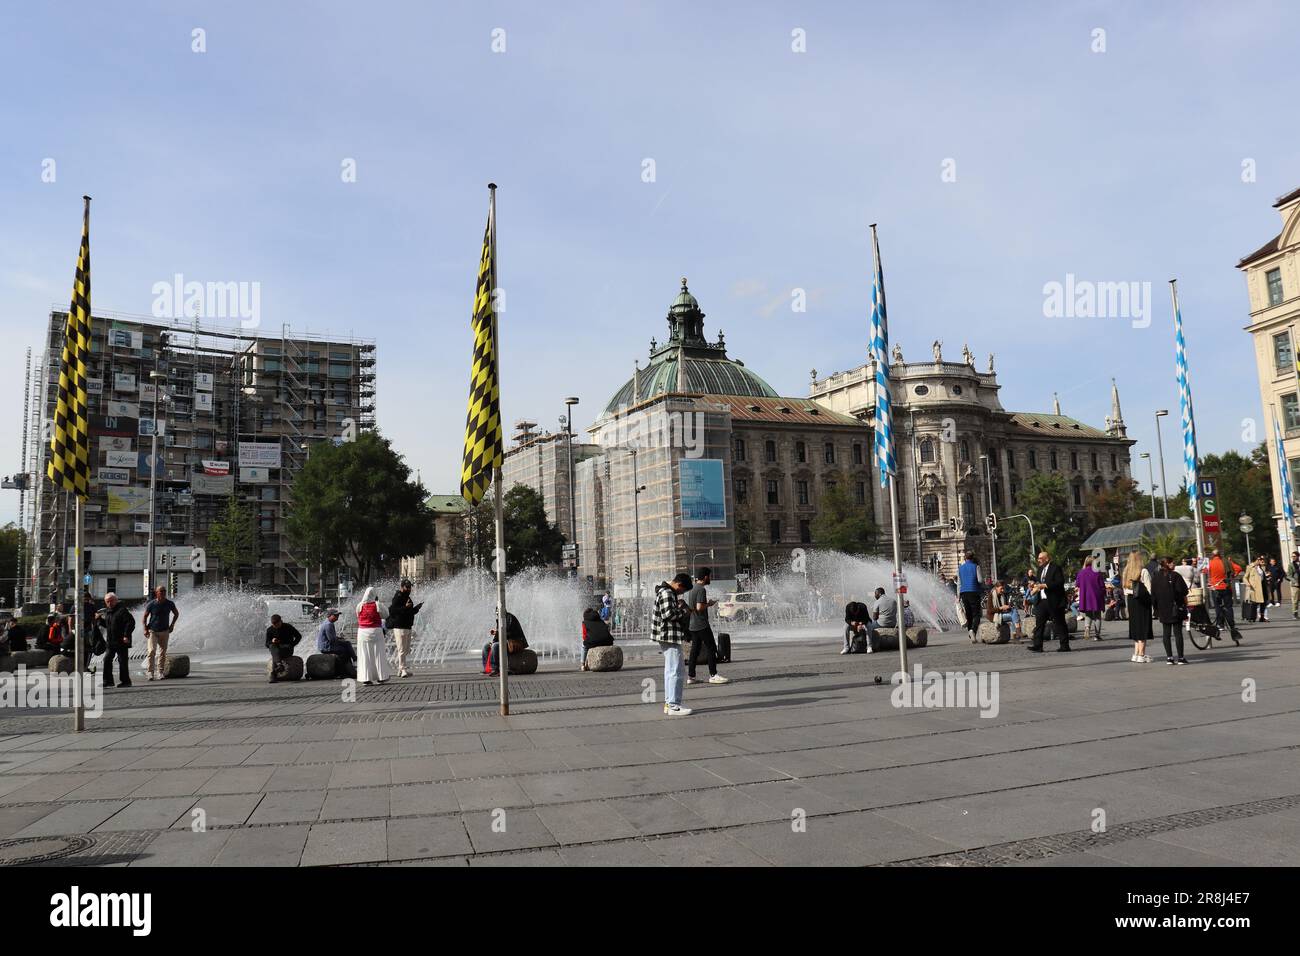 Monaco di Baviera, la capitale dello stato federale della Baviera. Dopo Berlino e Amburgo, è la terza città più popolosa della Germania ed è conosciuta come una di T... Foto Stock